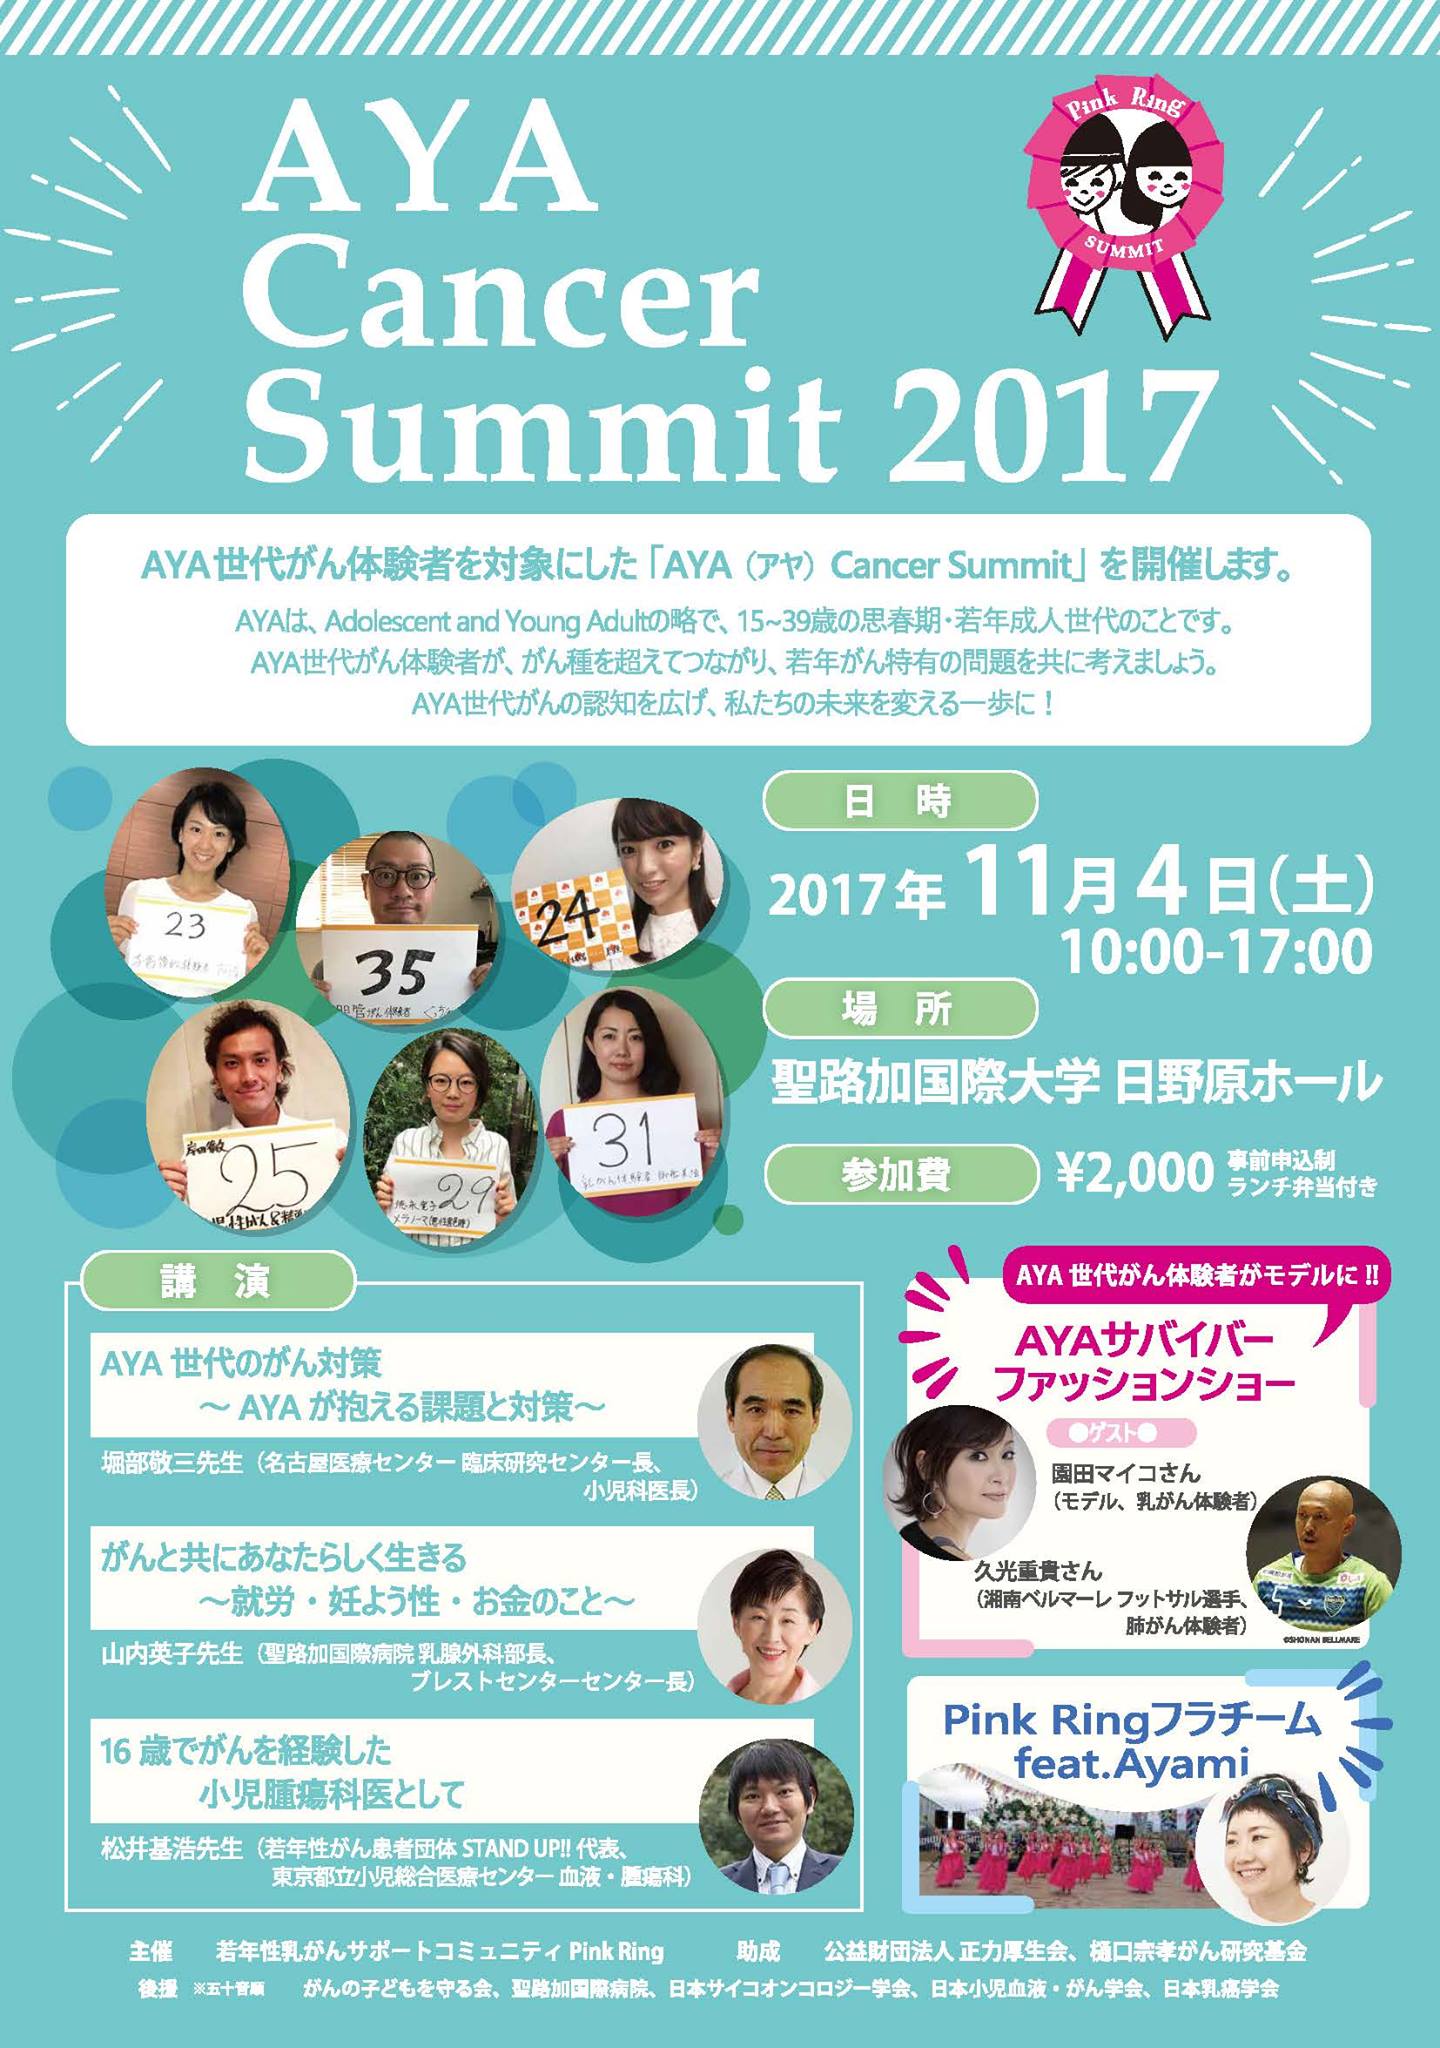 【徳永出演】AYA Cancer Summit 2017